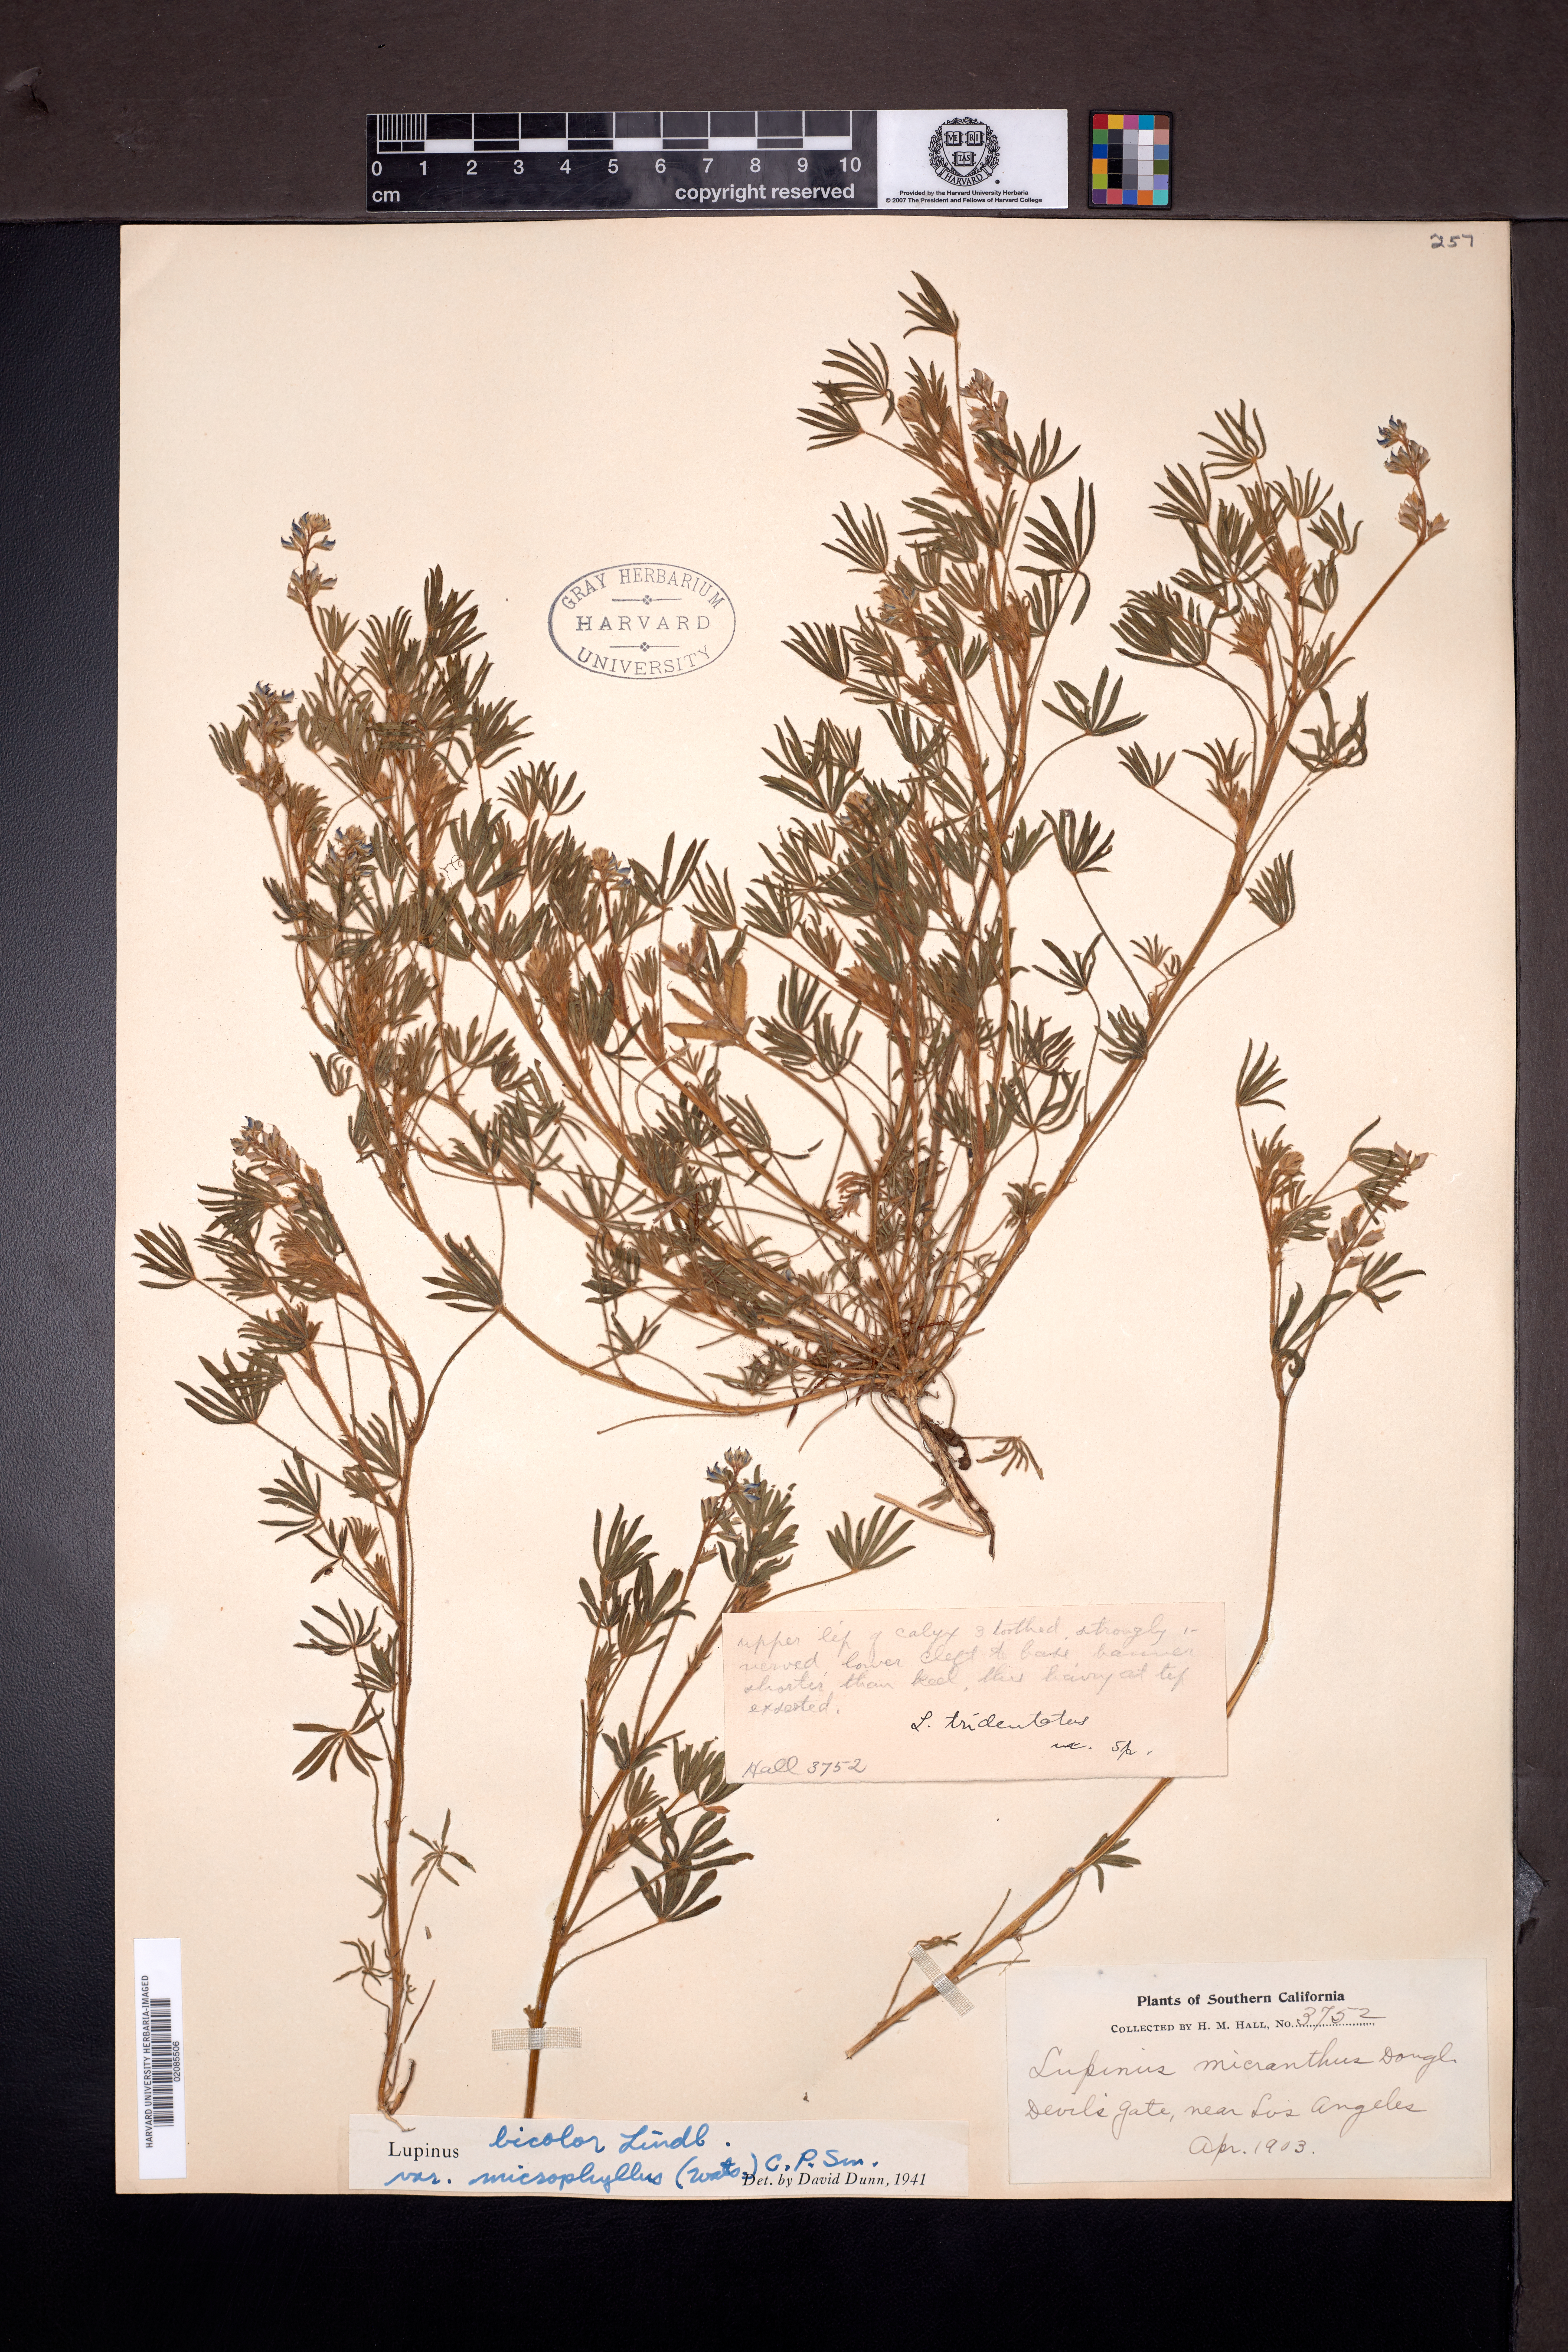 Lupinus bicolor subsp. microphyllus image